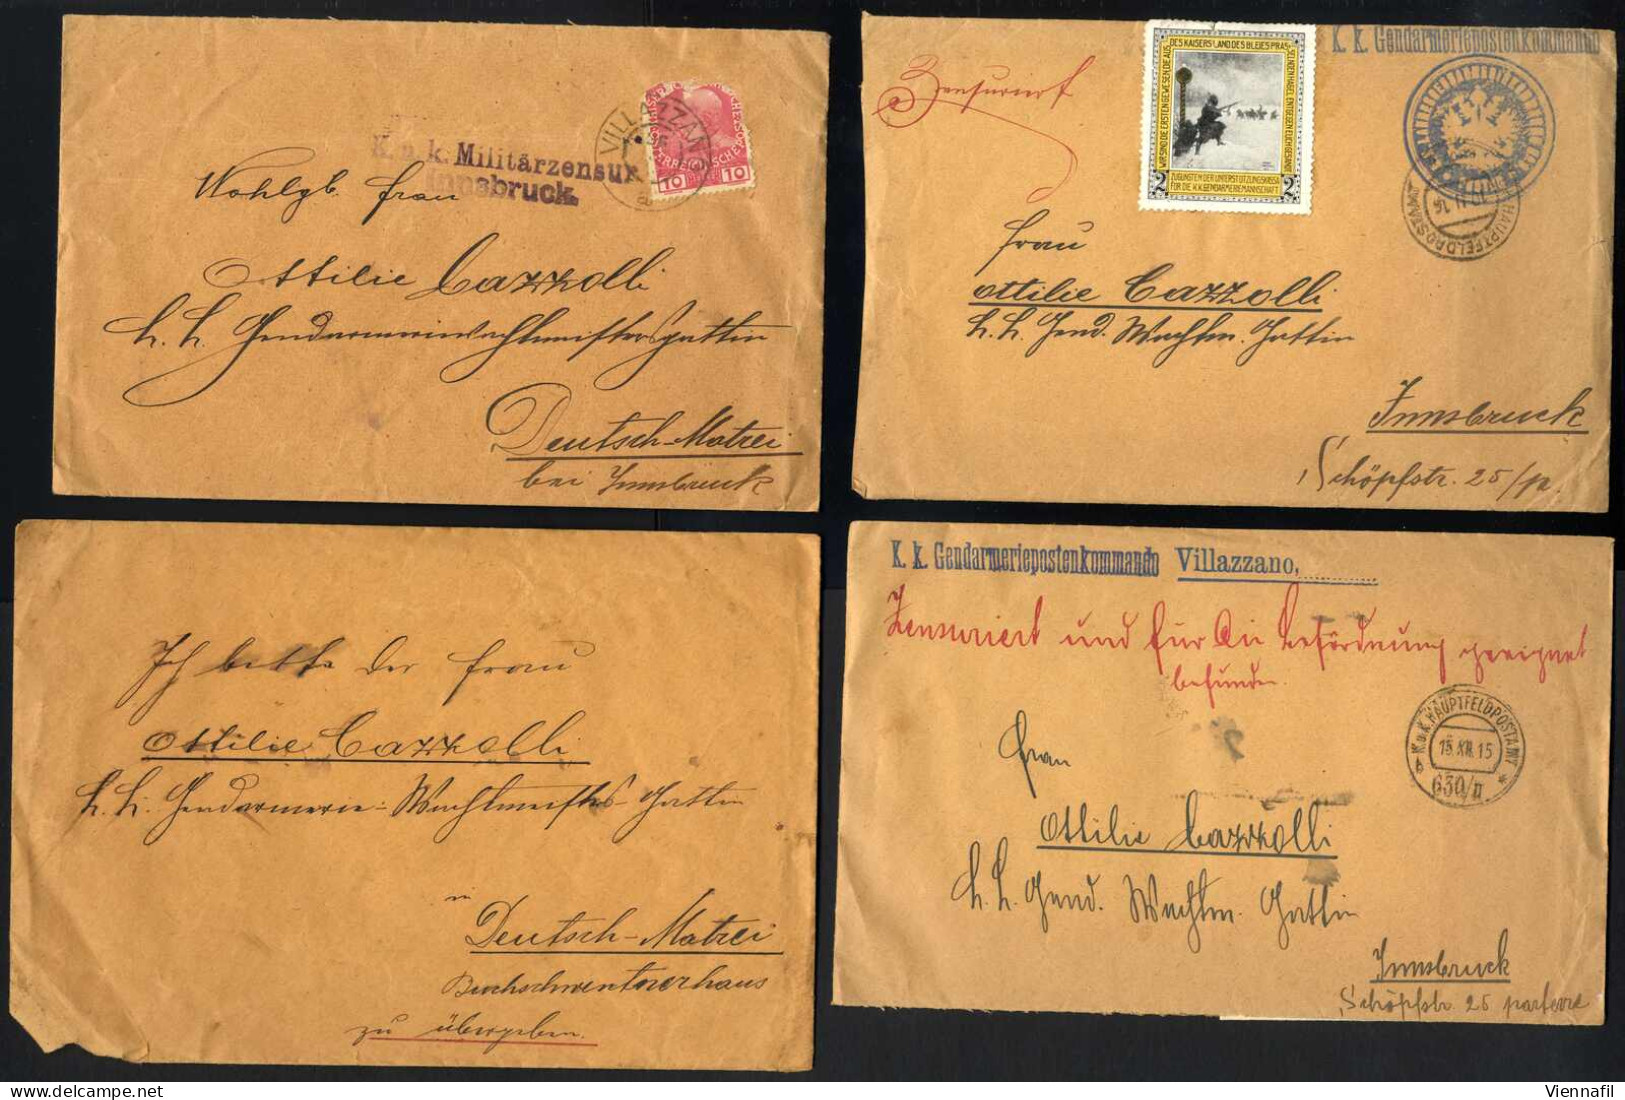 cover Tirol 1915/18 ca., Feldpostkorrespondenz überwiegend aus Villazzano, über 50 Belege, Abbildungen siehe Onlinekatal